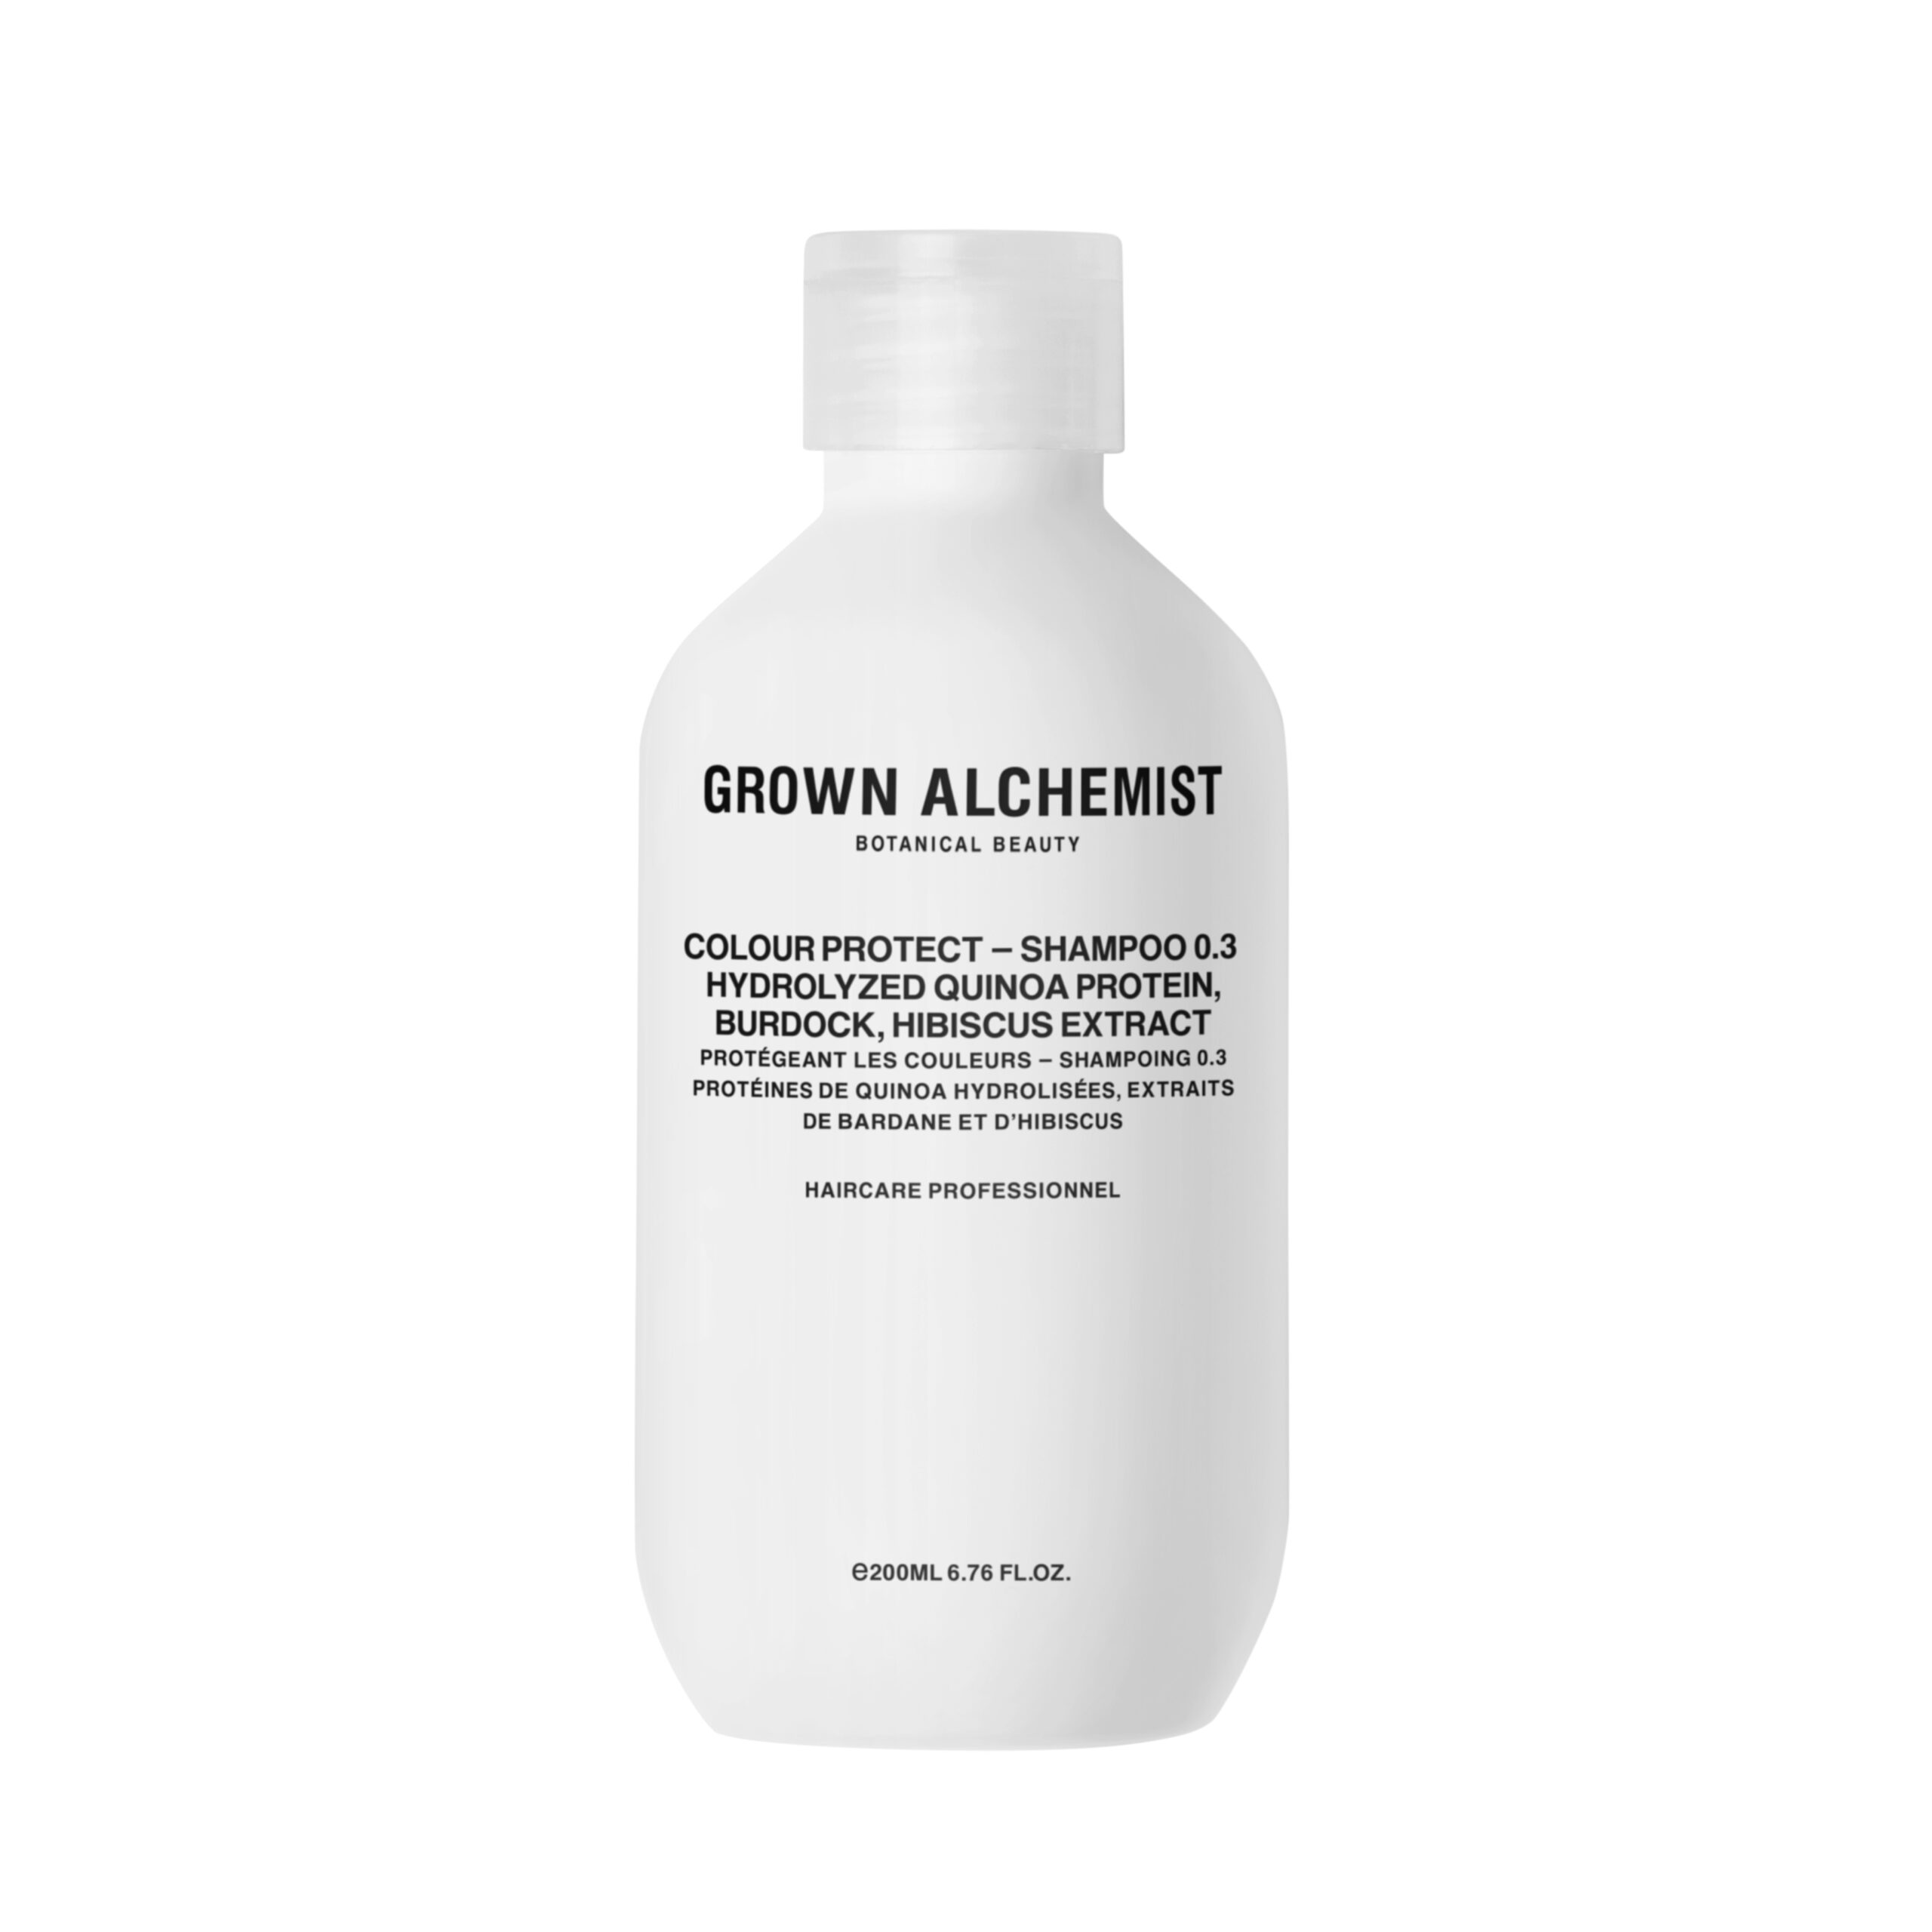 GROWN ALCH HAIR Colour Protect Shampoo 0 3 200 ml